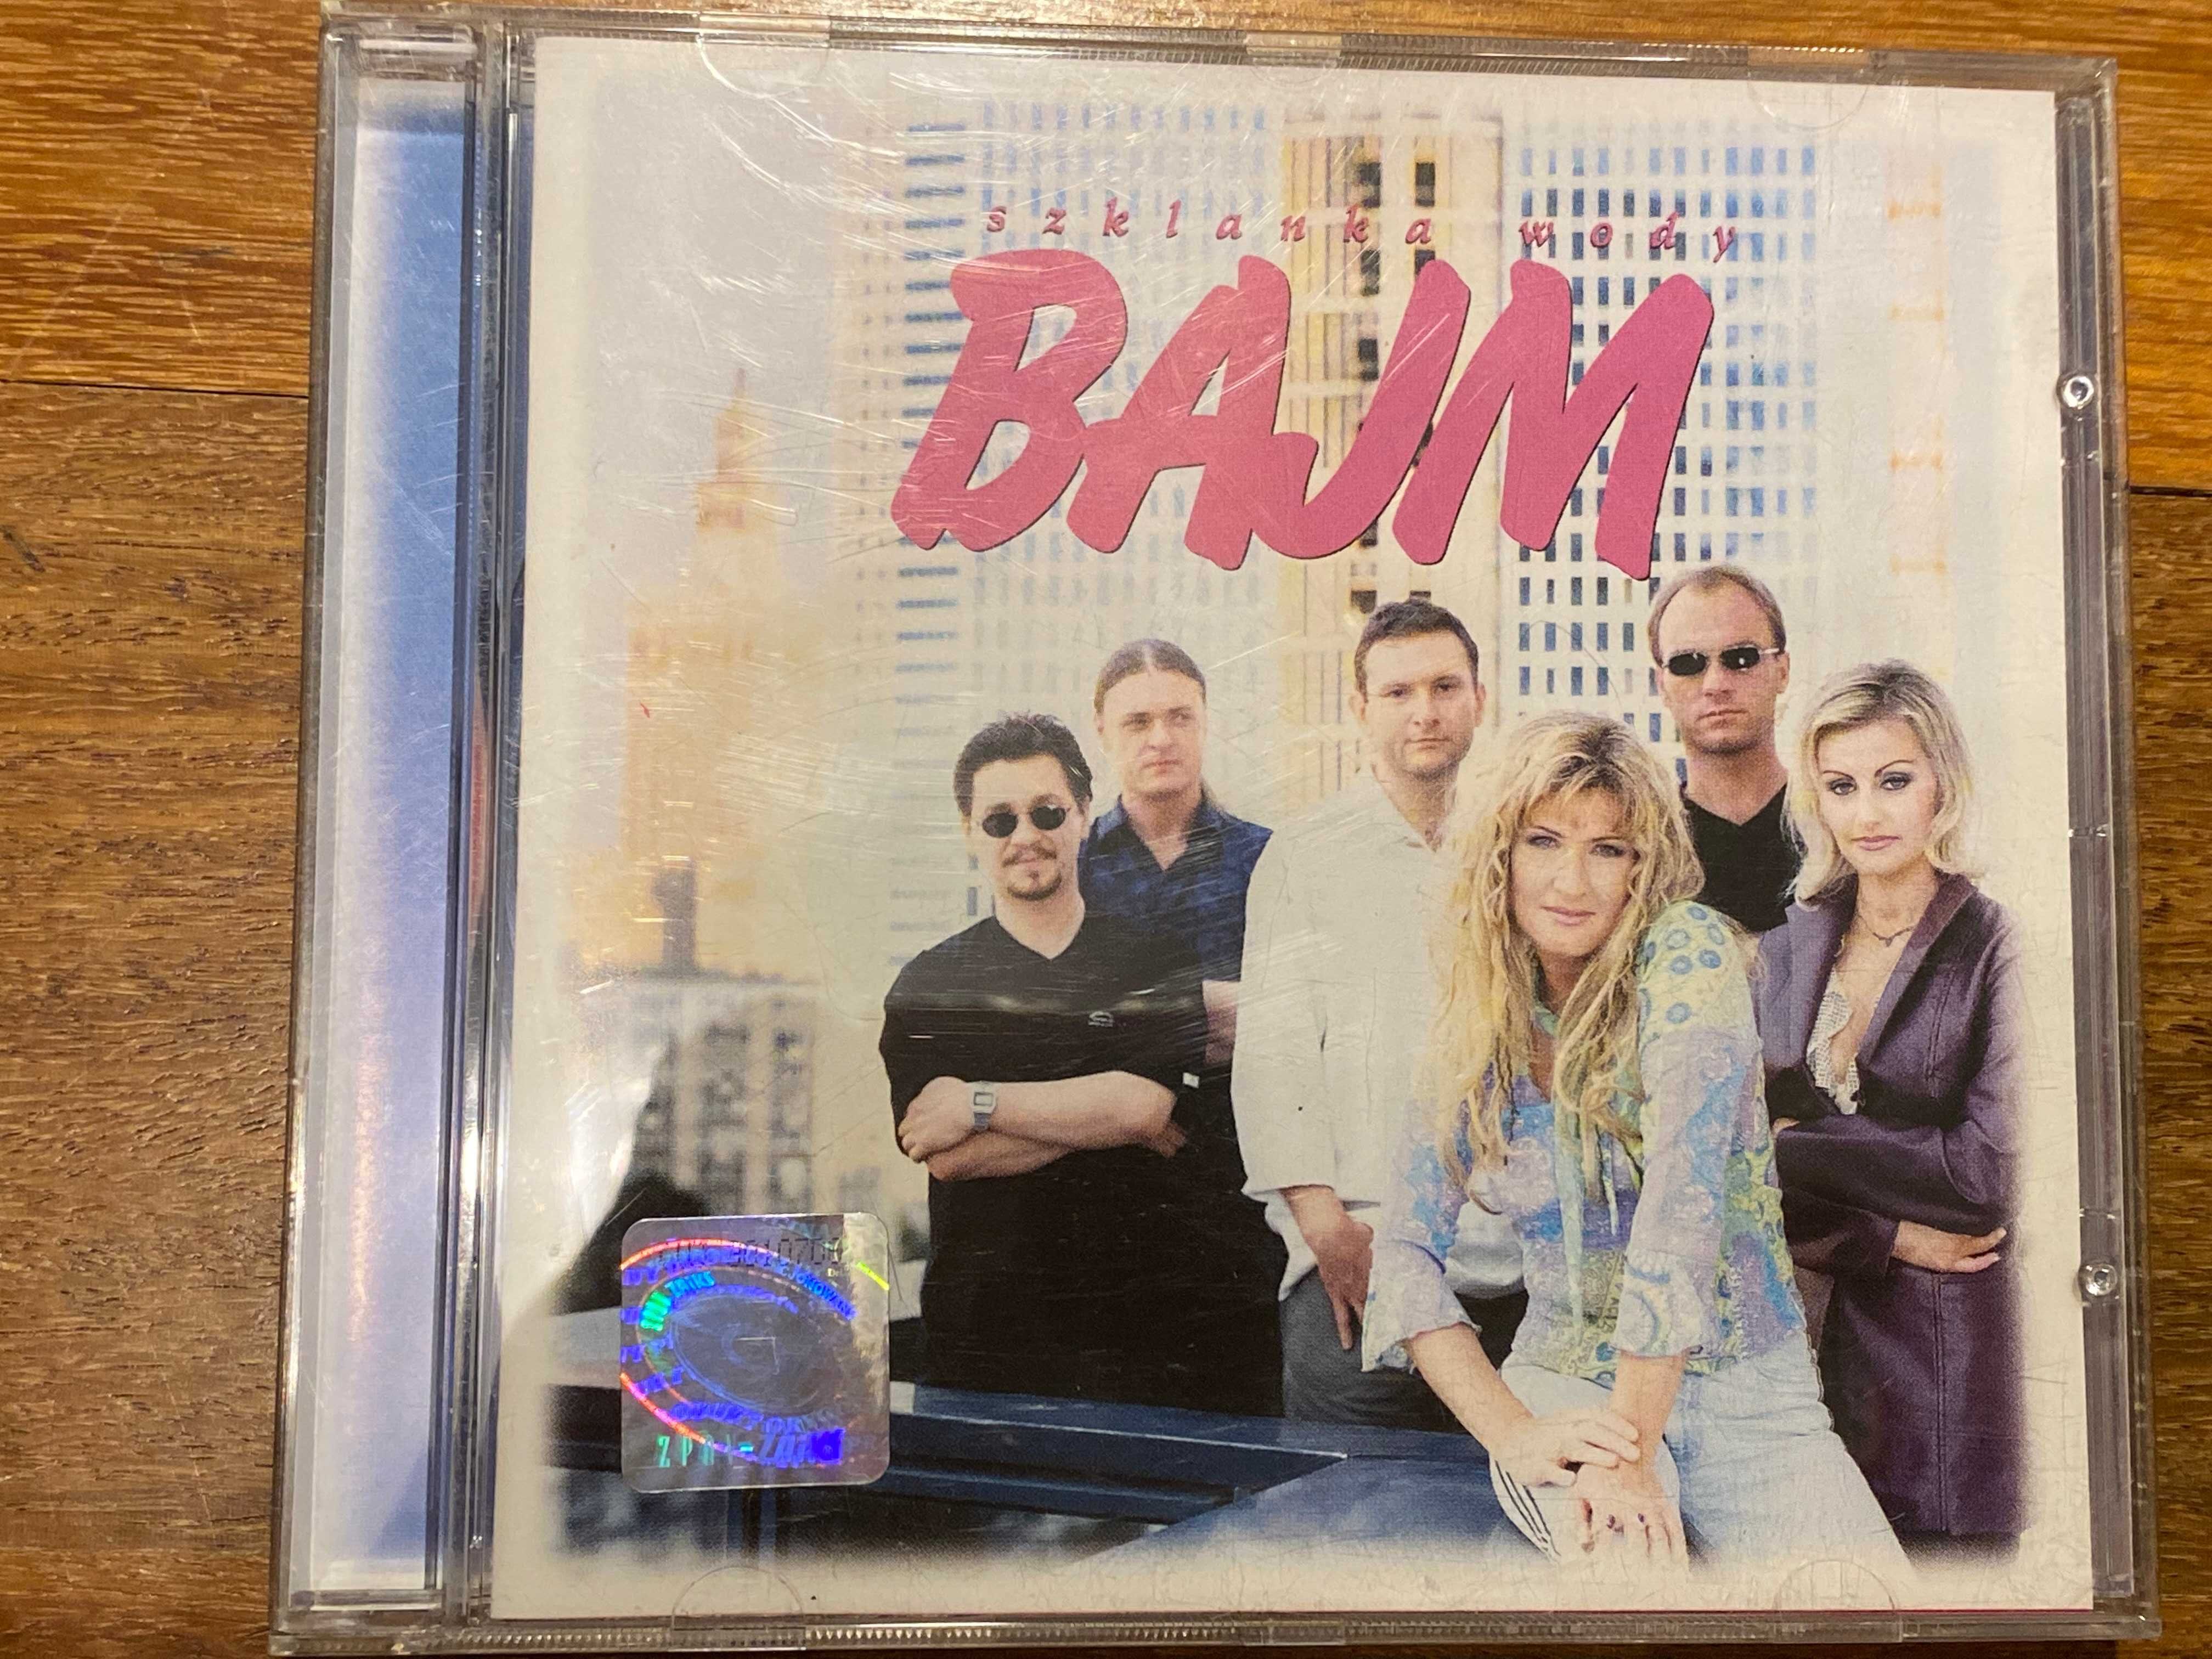 BAJM Szklanka Wody płyta CD